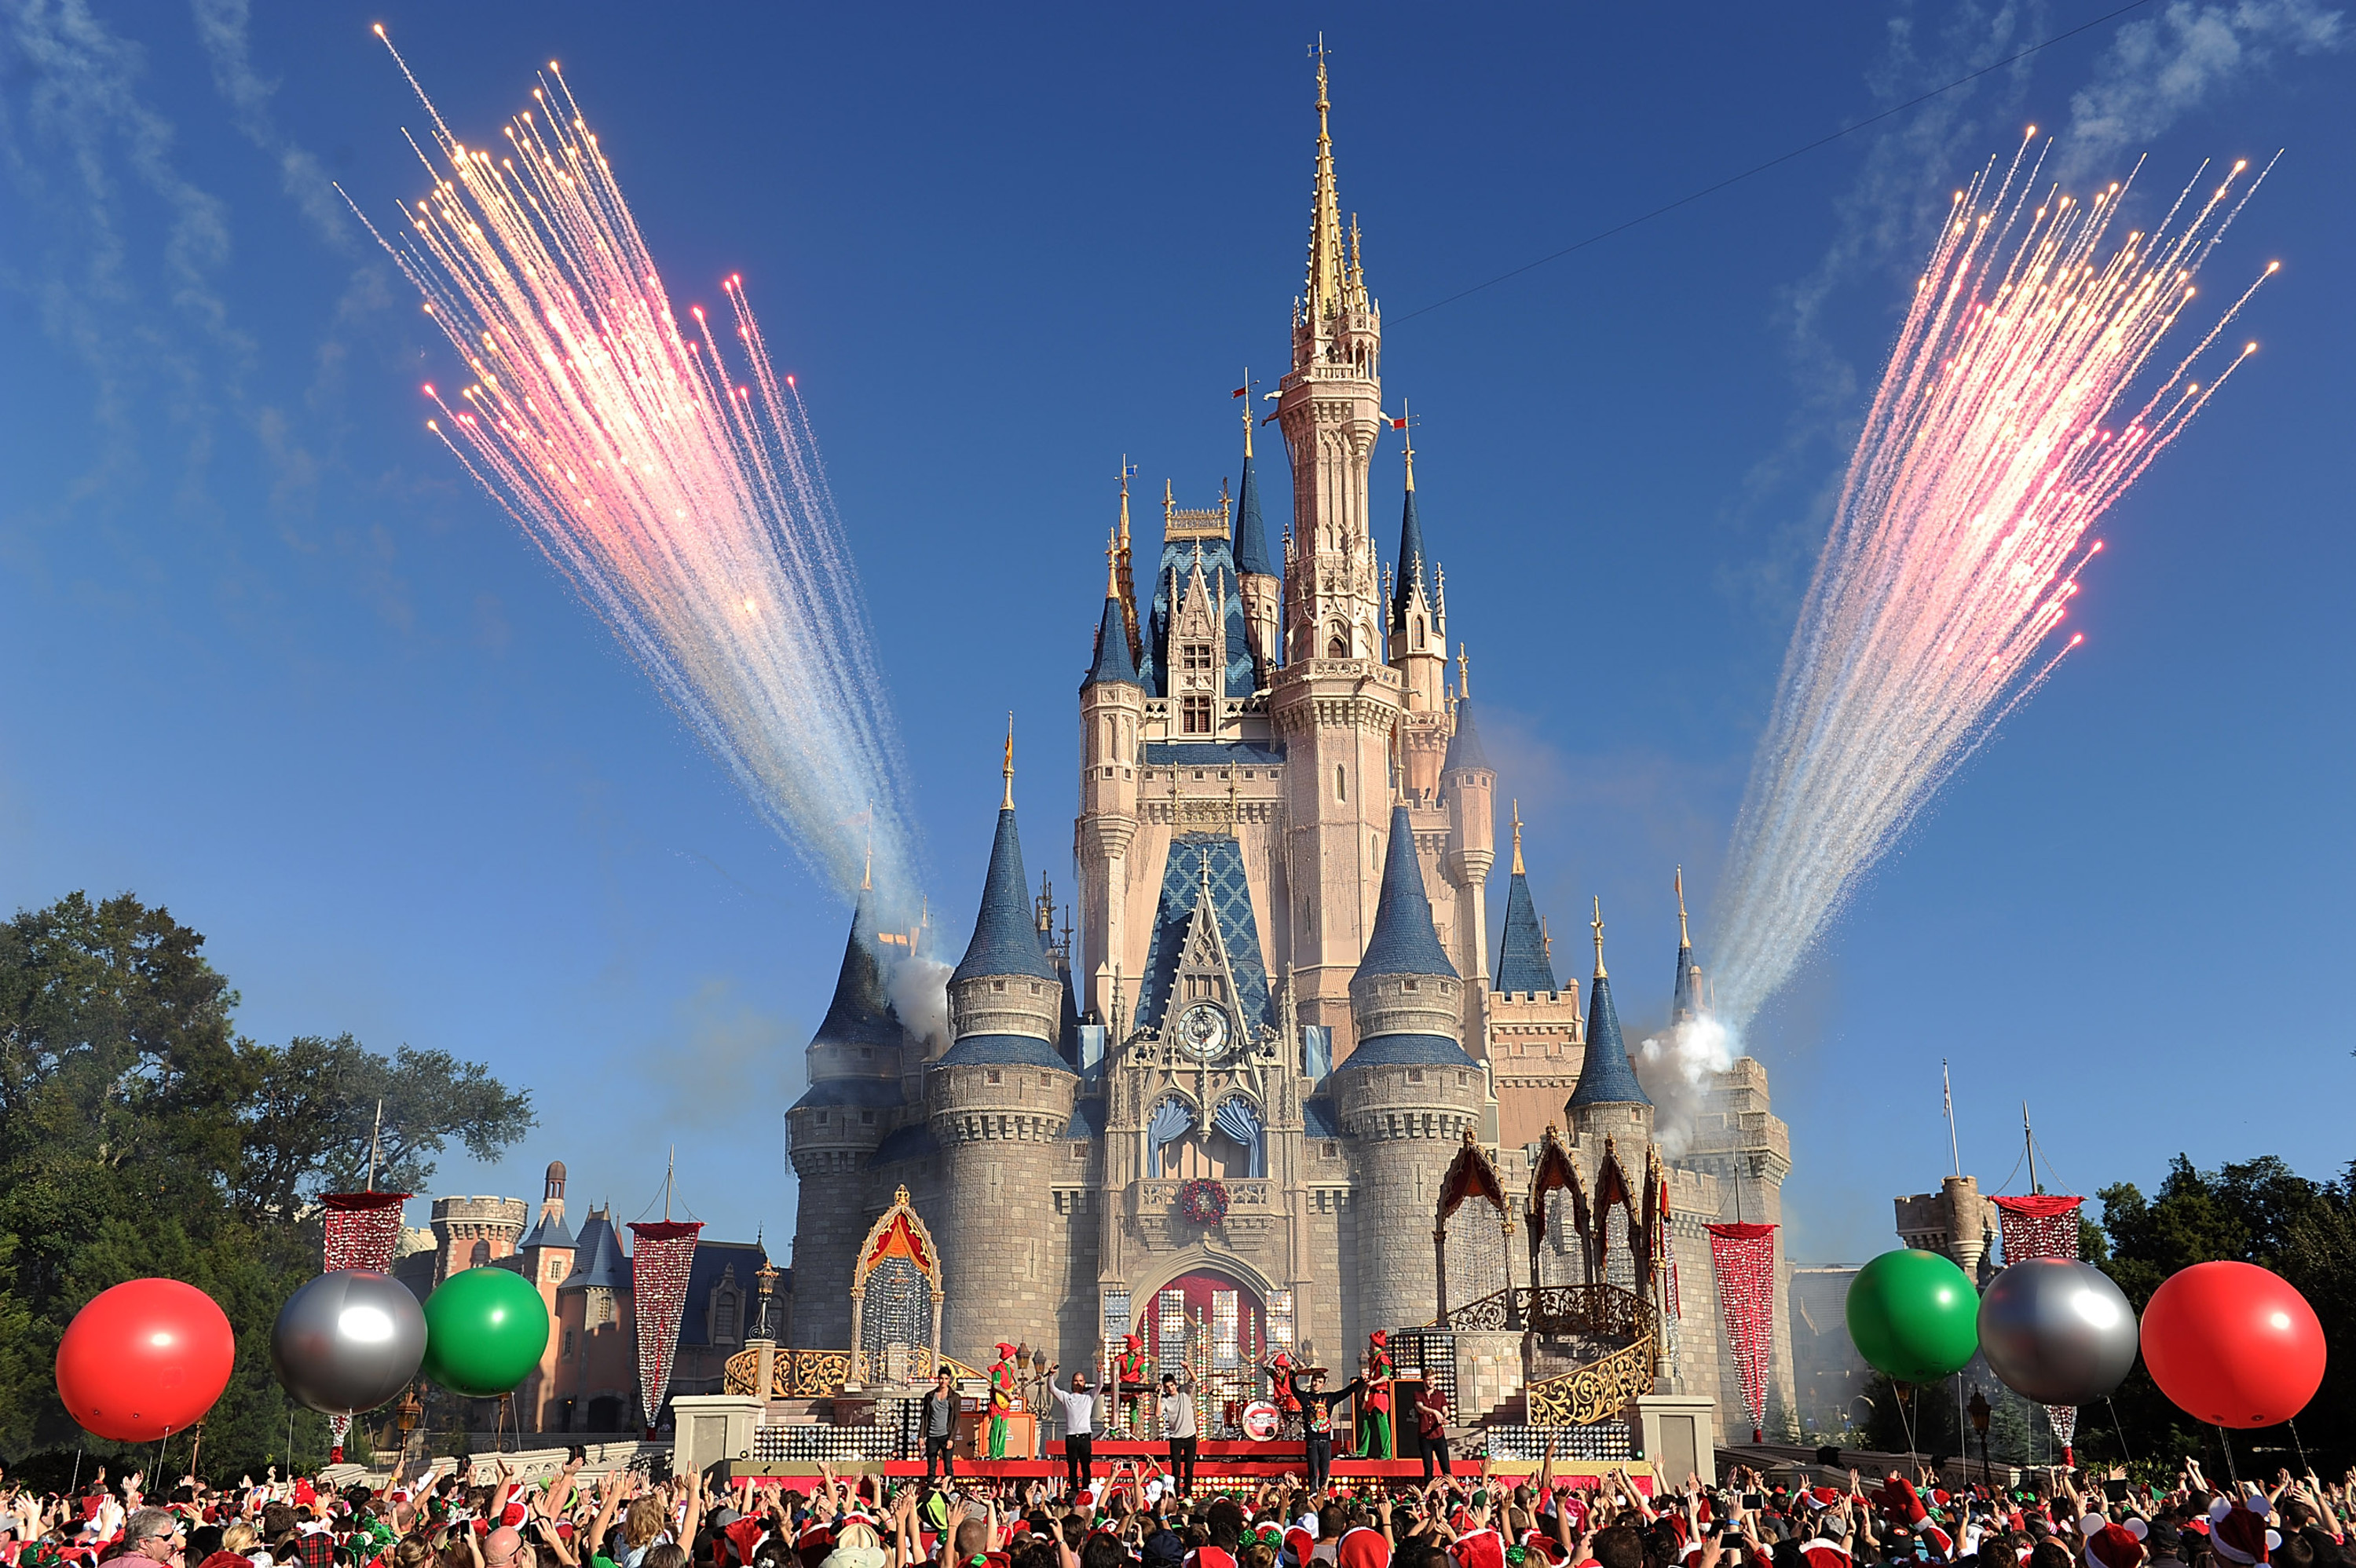 Magic Kingdom at Walt Disney World. 